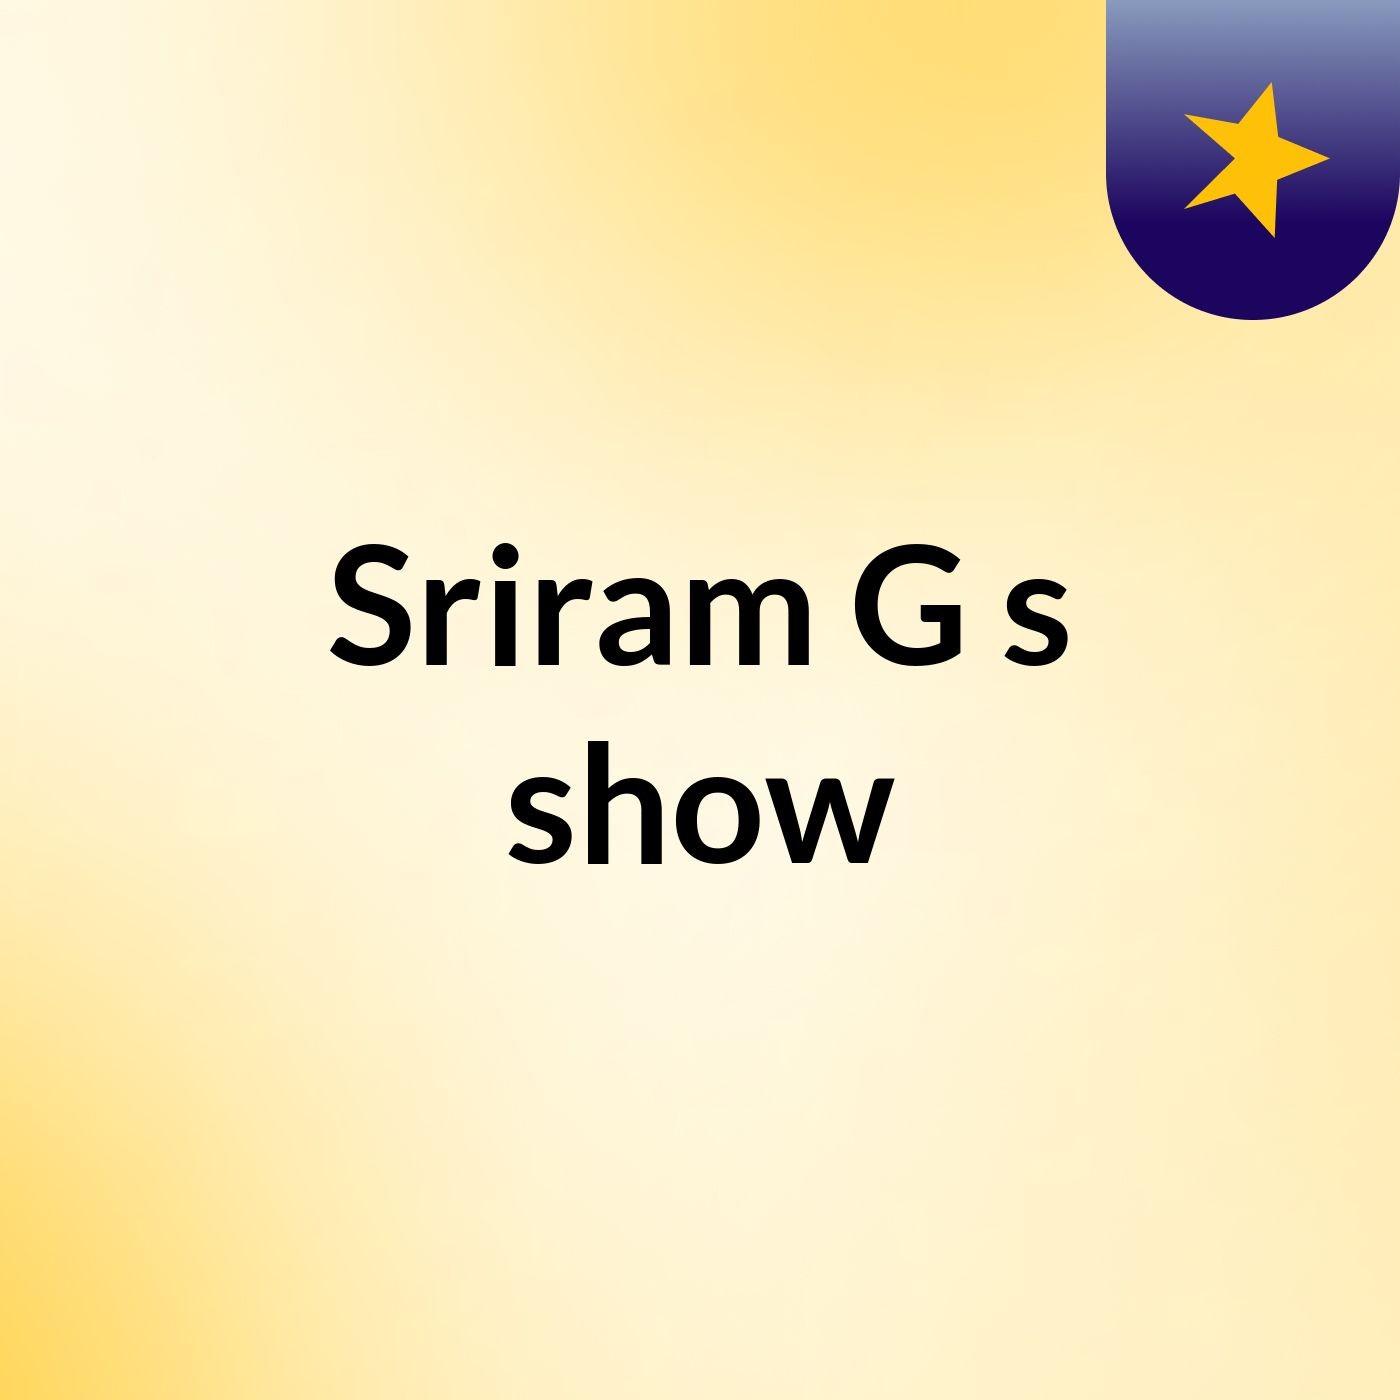 Sriram G's show